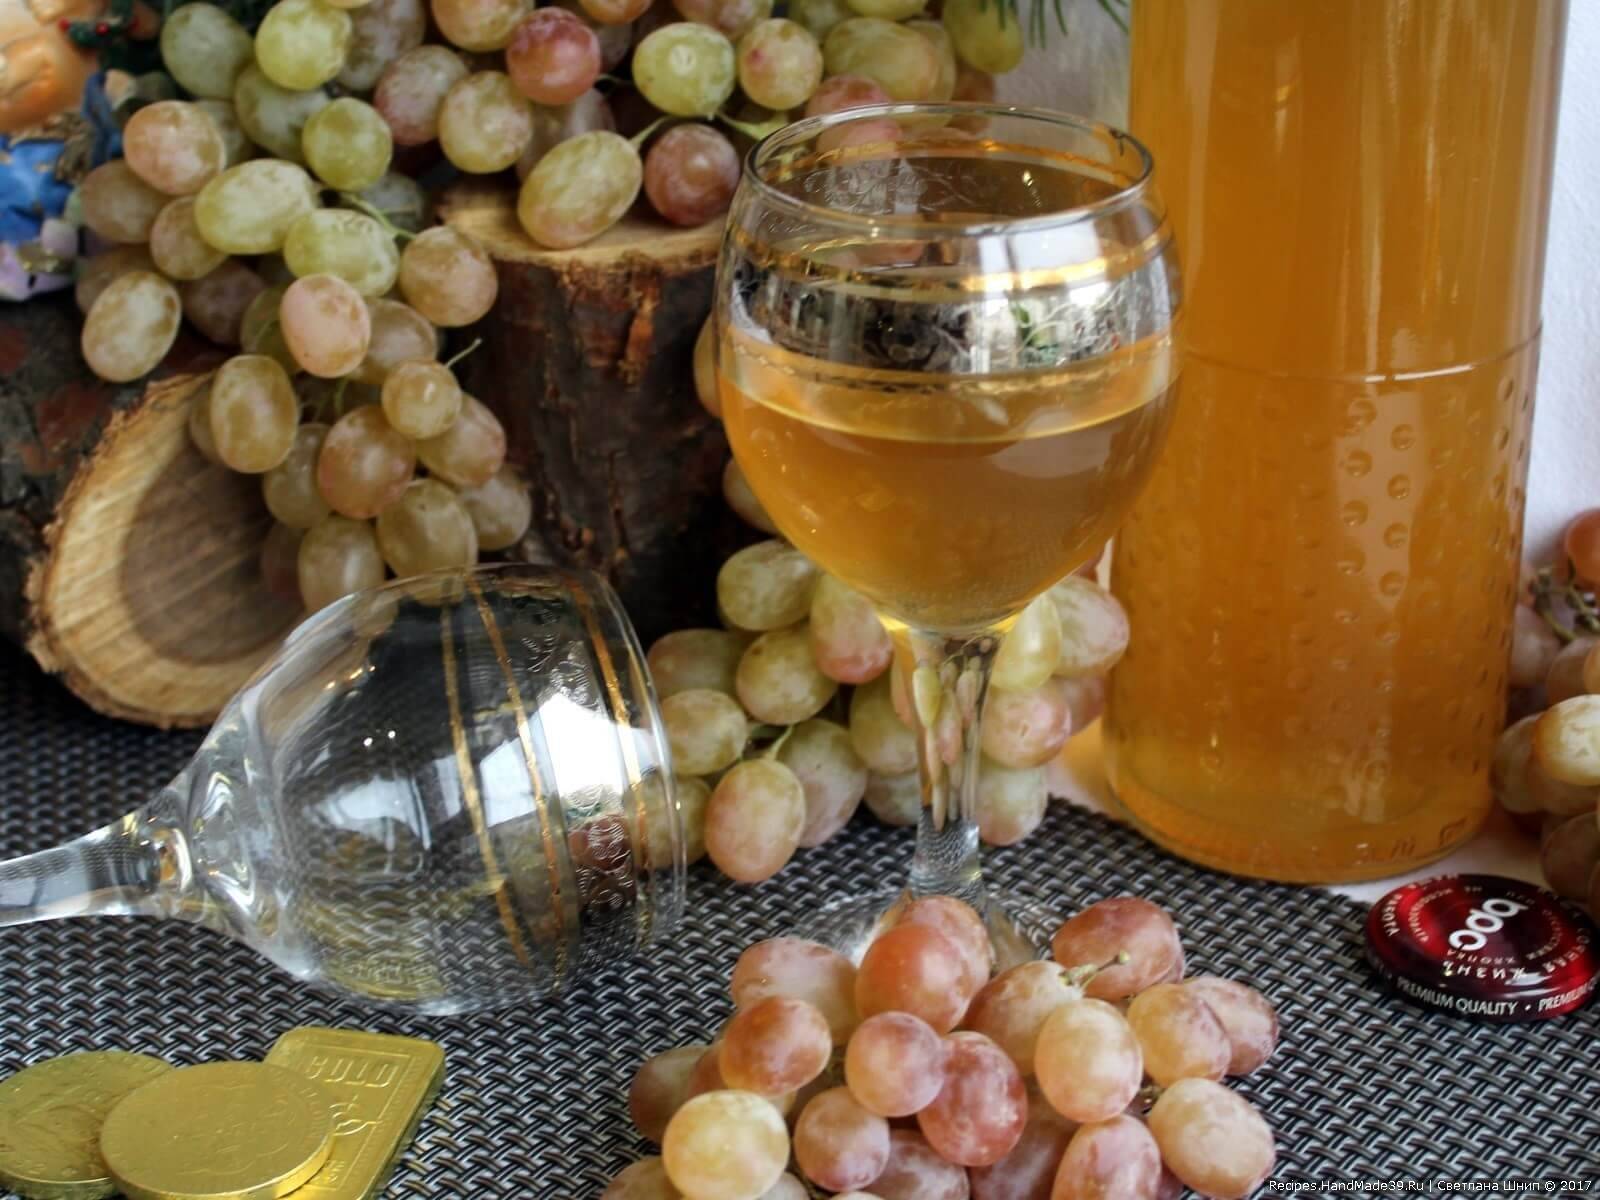 Вино из белого винограда в домашних условиях простой рецепт: как сделать, пошаговая инструкция